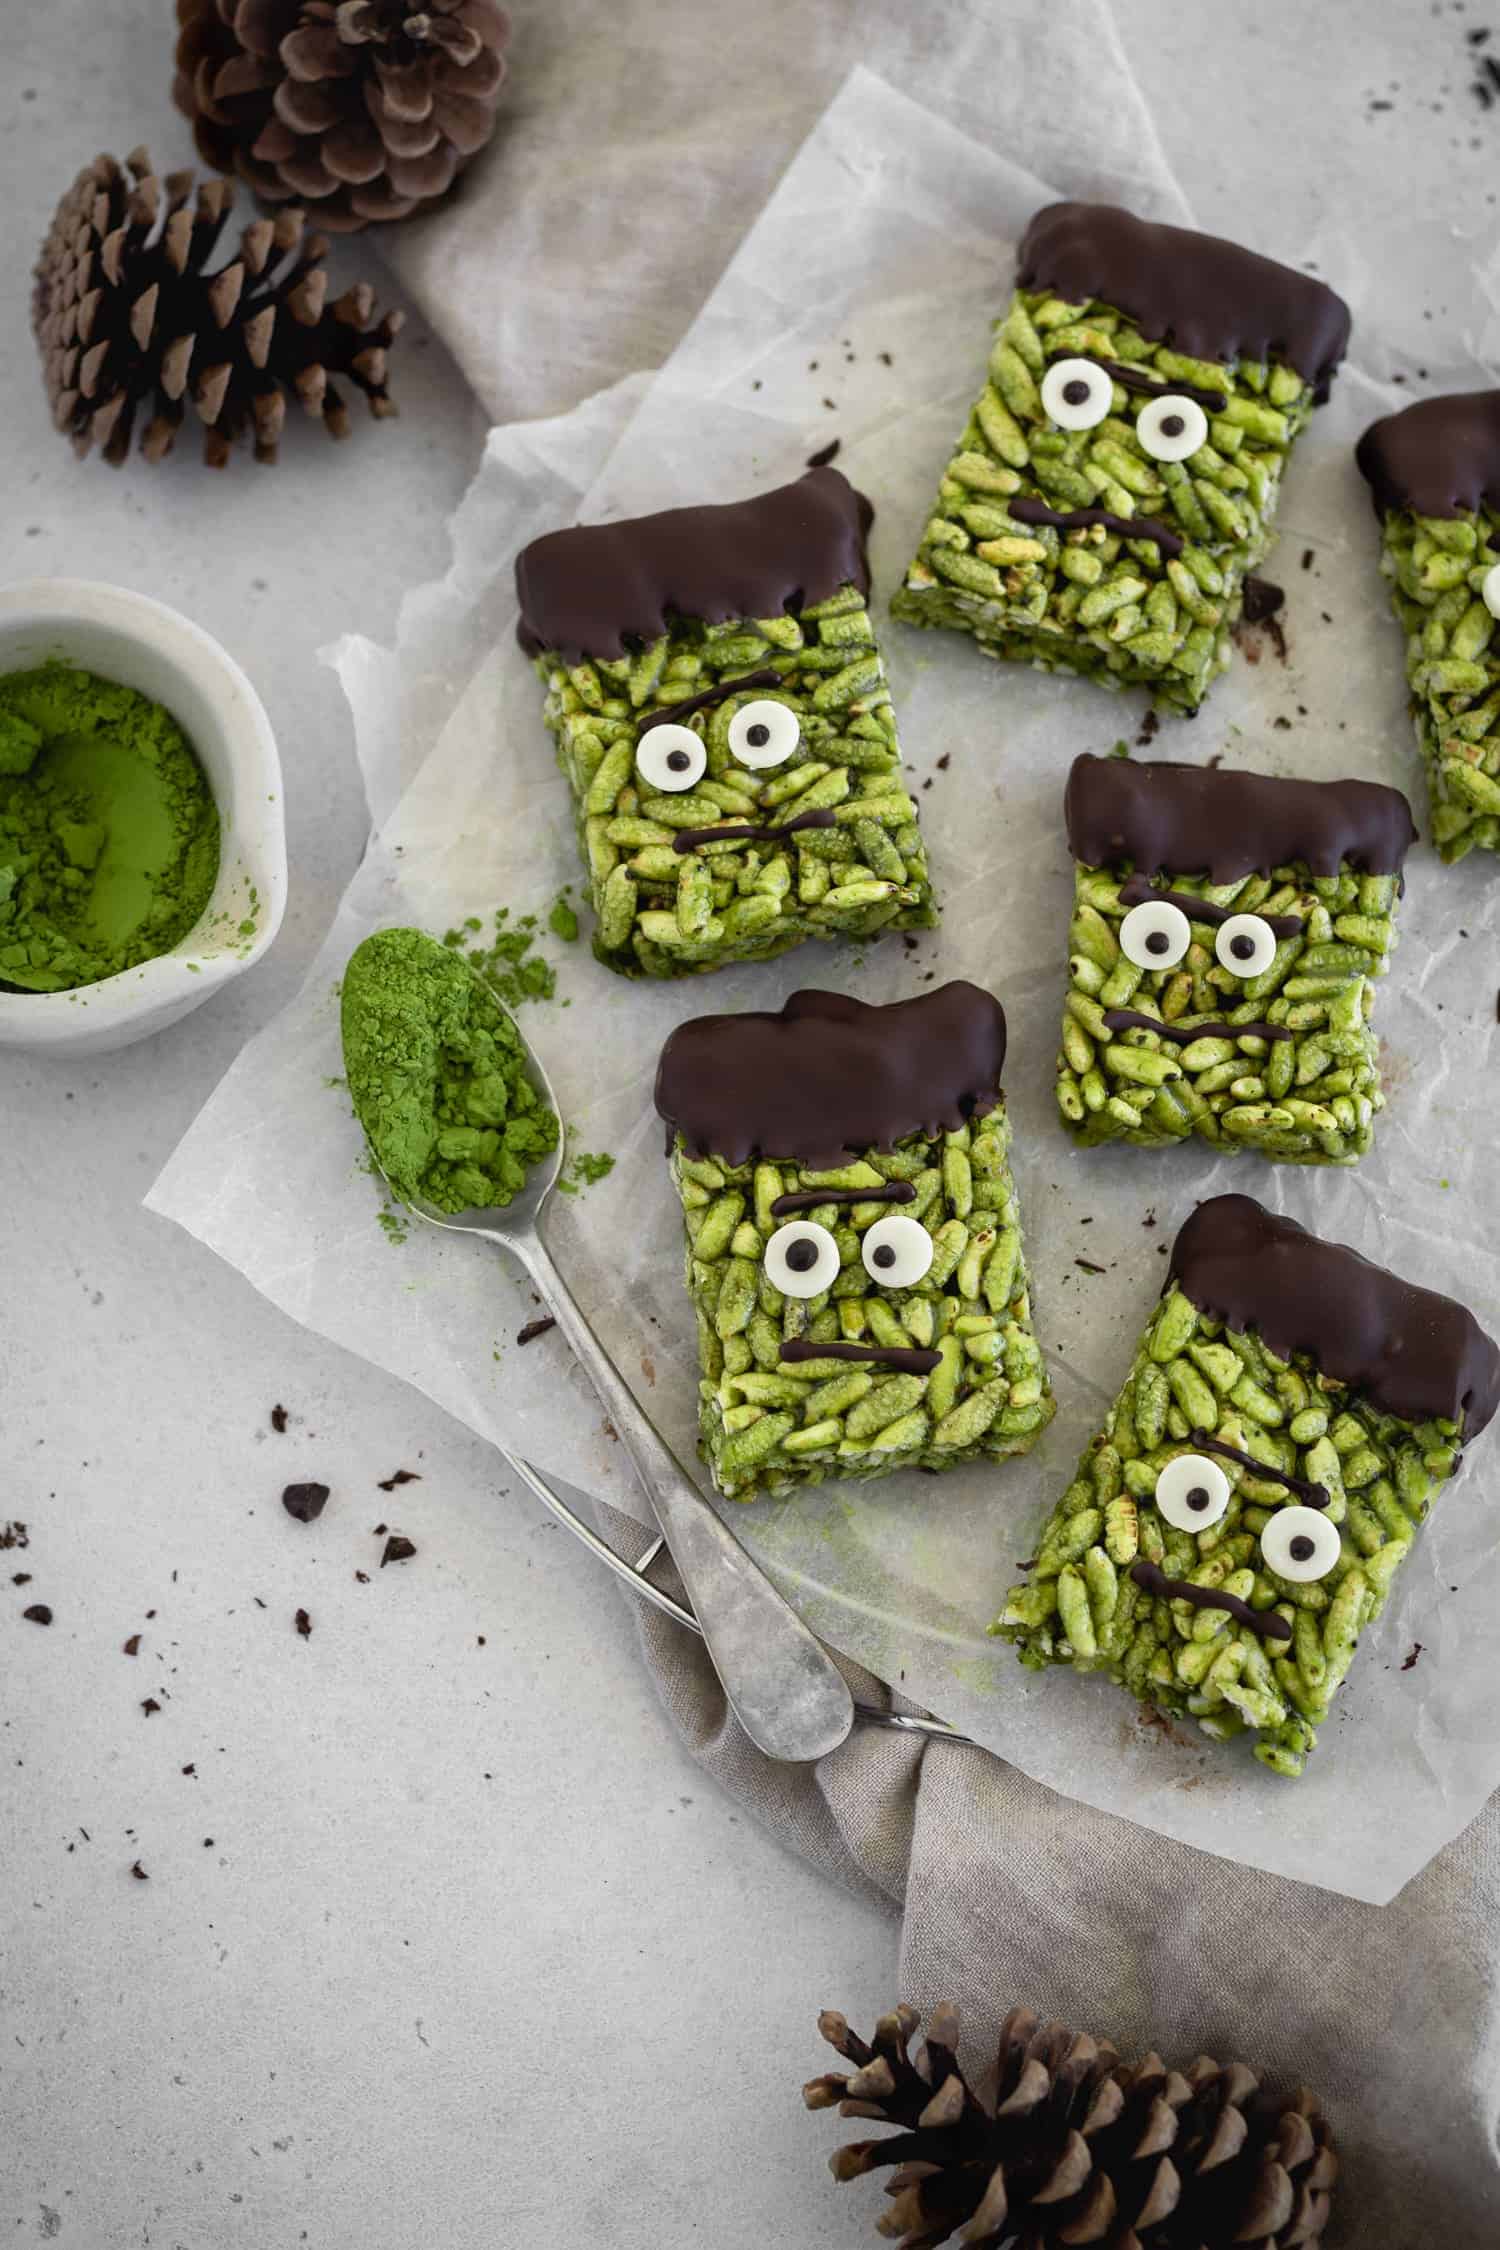 Matcha rice krispie treats decorated as Frankenstein